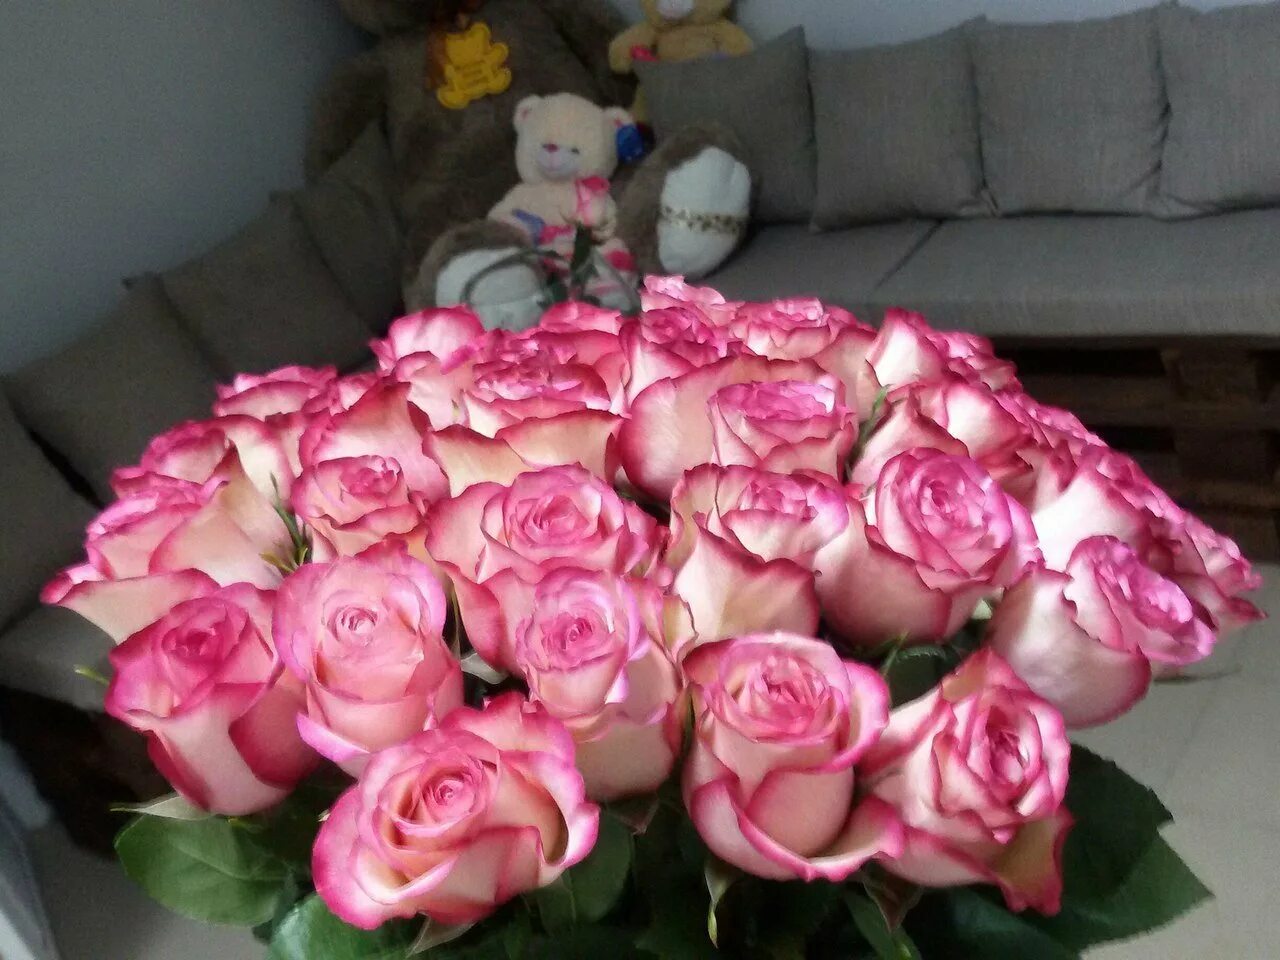 Фото цветов на столе реальные. Красивый букет дома. Букет роз в домашней обстановке. Красивый букет роз на кровати. Букет роз дома.